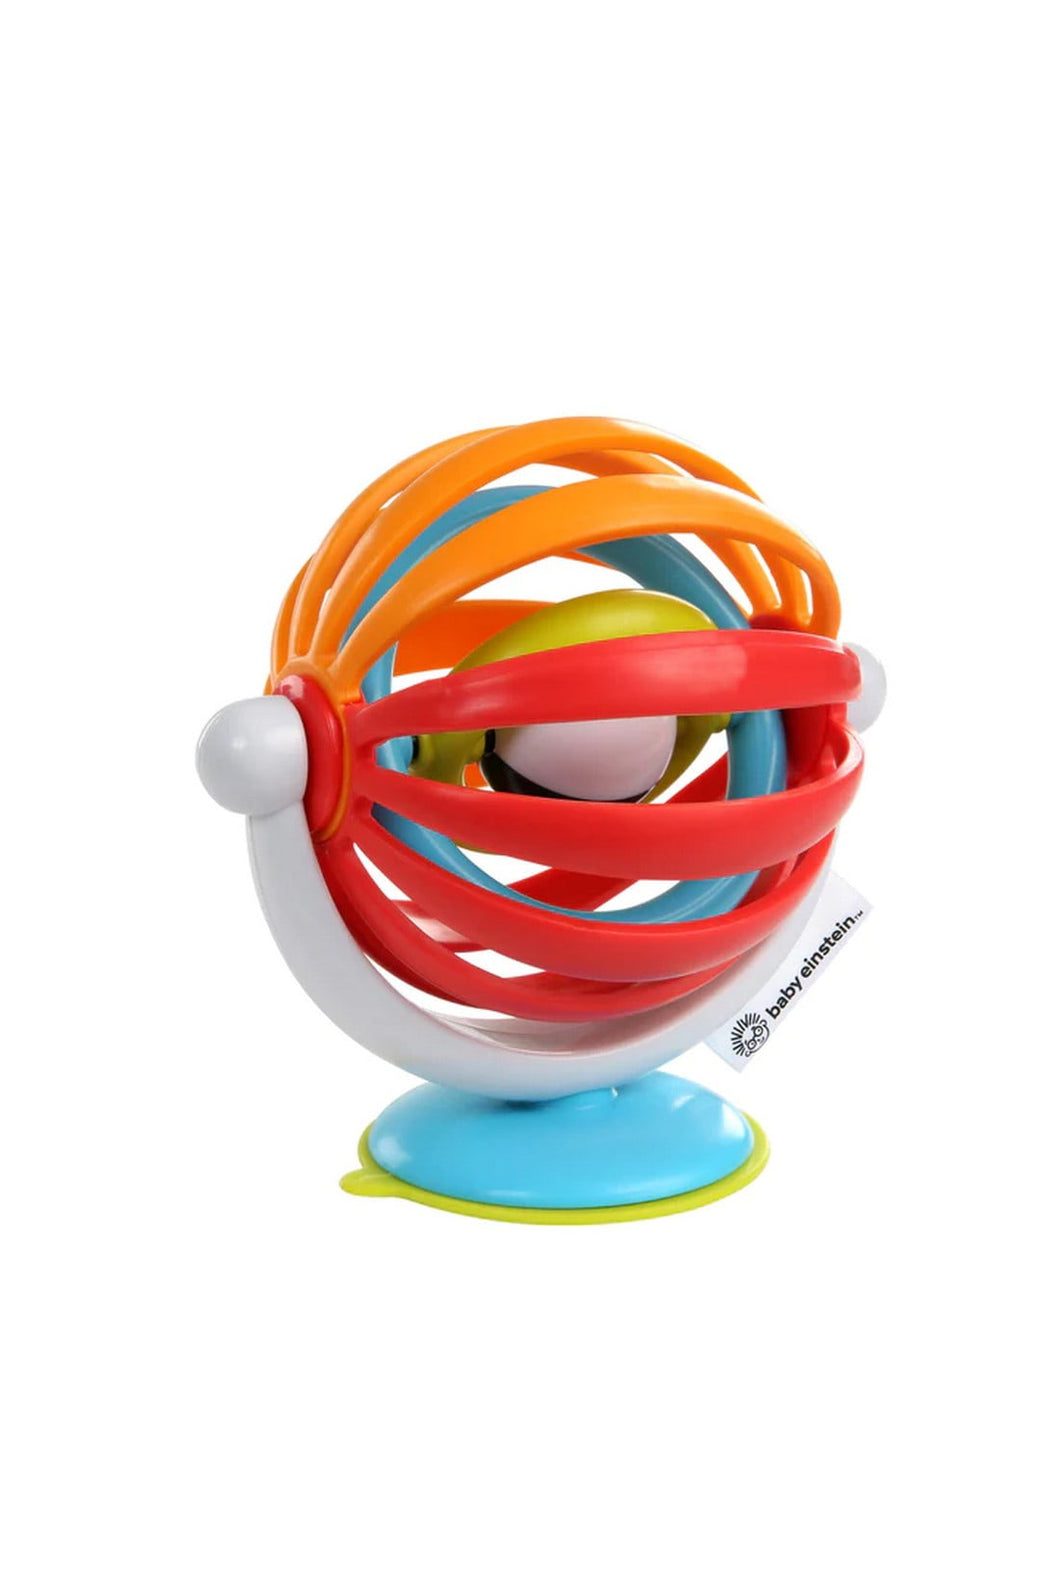 Baby Einstein Sticky Spinner Activity Toy 1